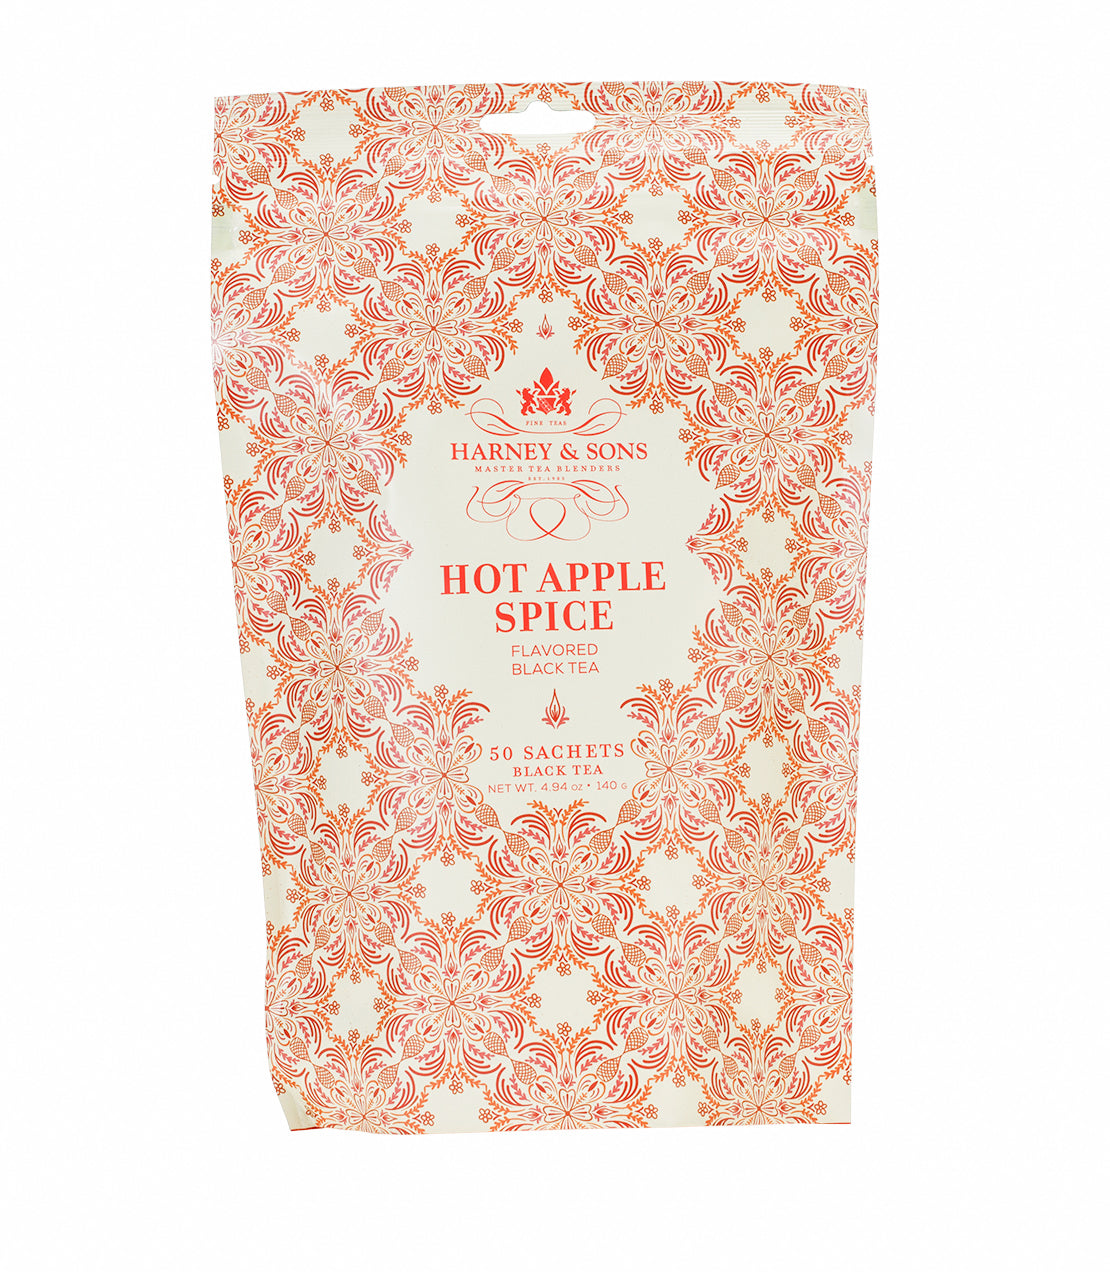 Hot Apple Spice - Sachets Bag of 50 Sachets - Harney & Sons Fine Teas